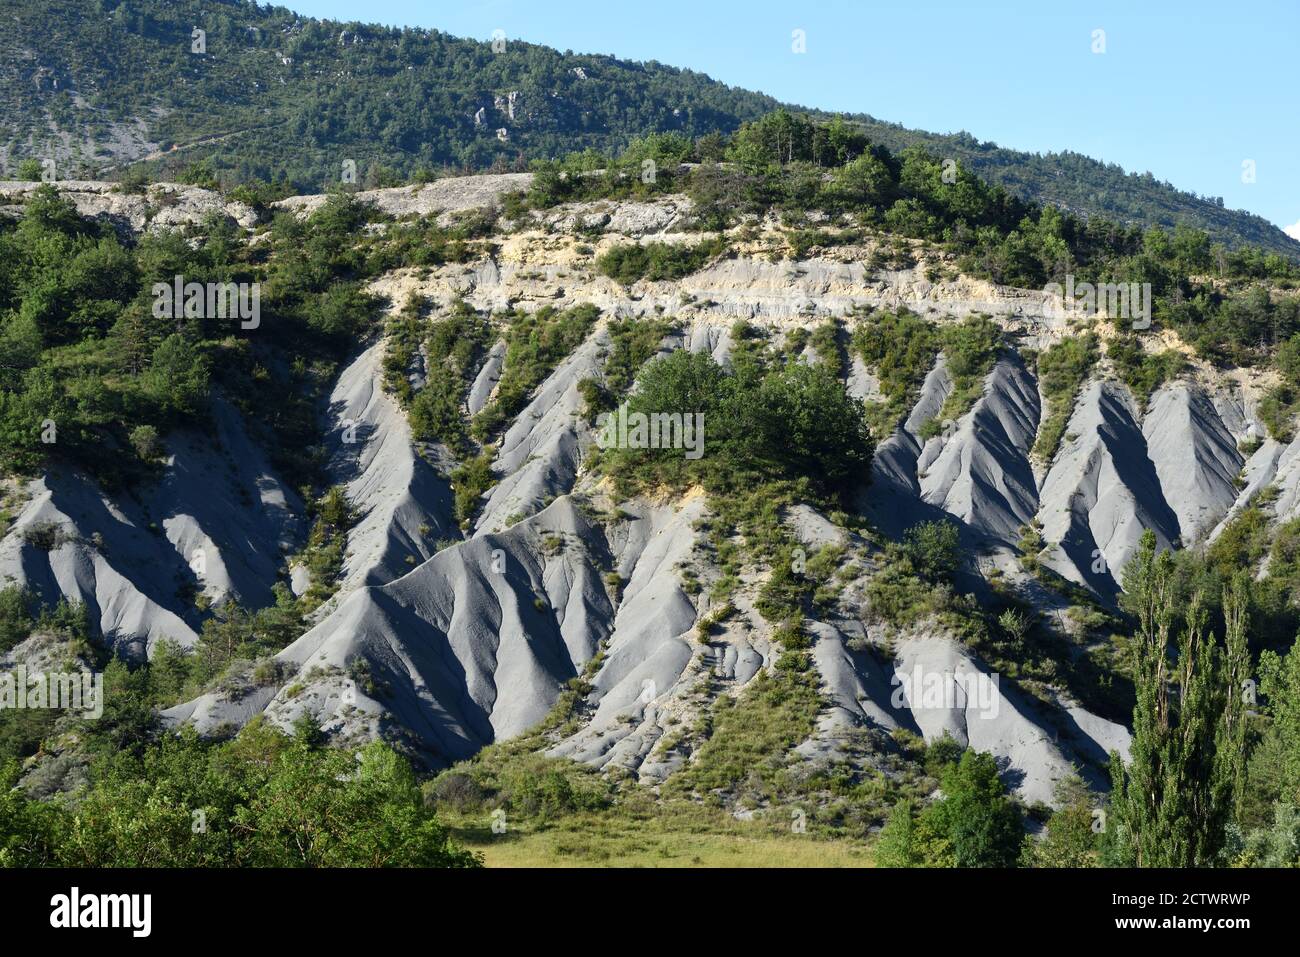 Formazioni rocciose ondulate di arenaria o Marl Nero noto come Robines Blieux Alpes-de-Haute-Provence Provenza Provenza Francia Foto Stock